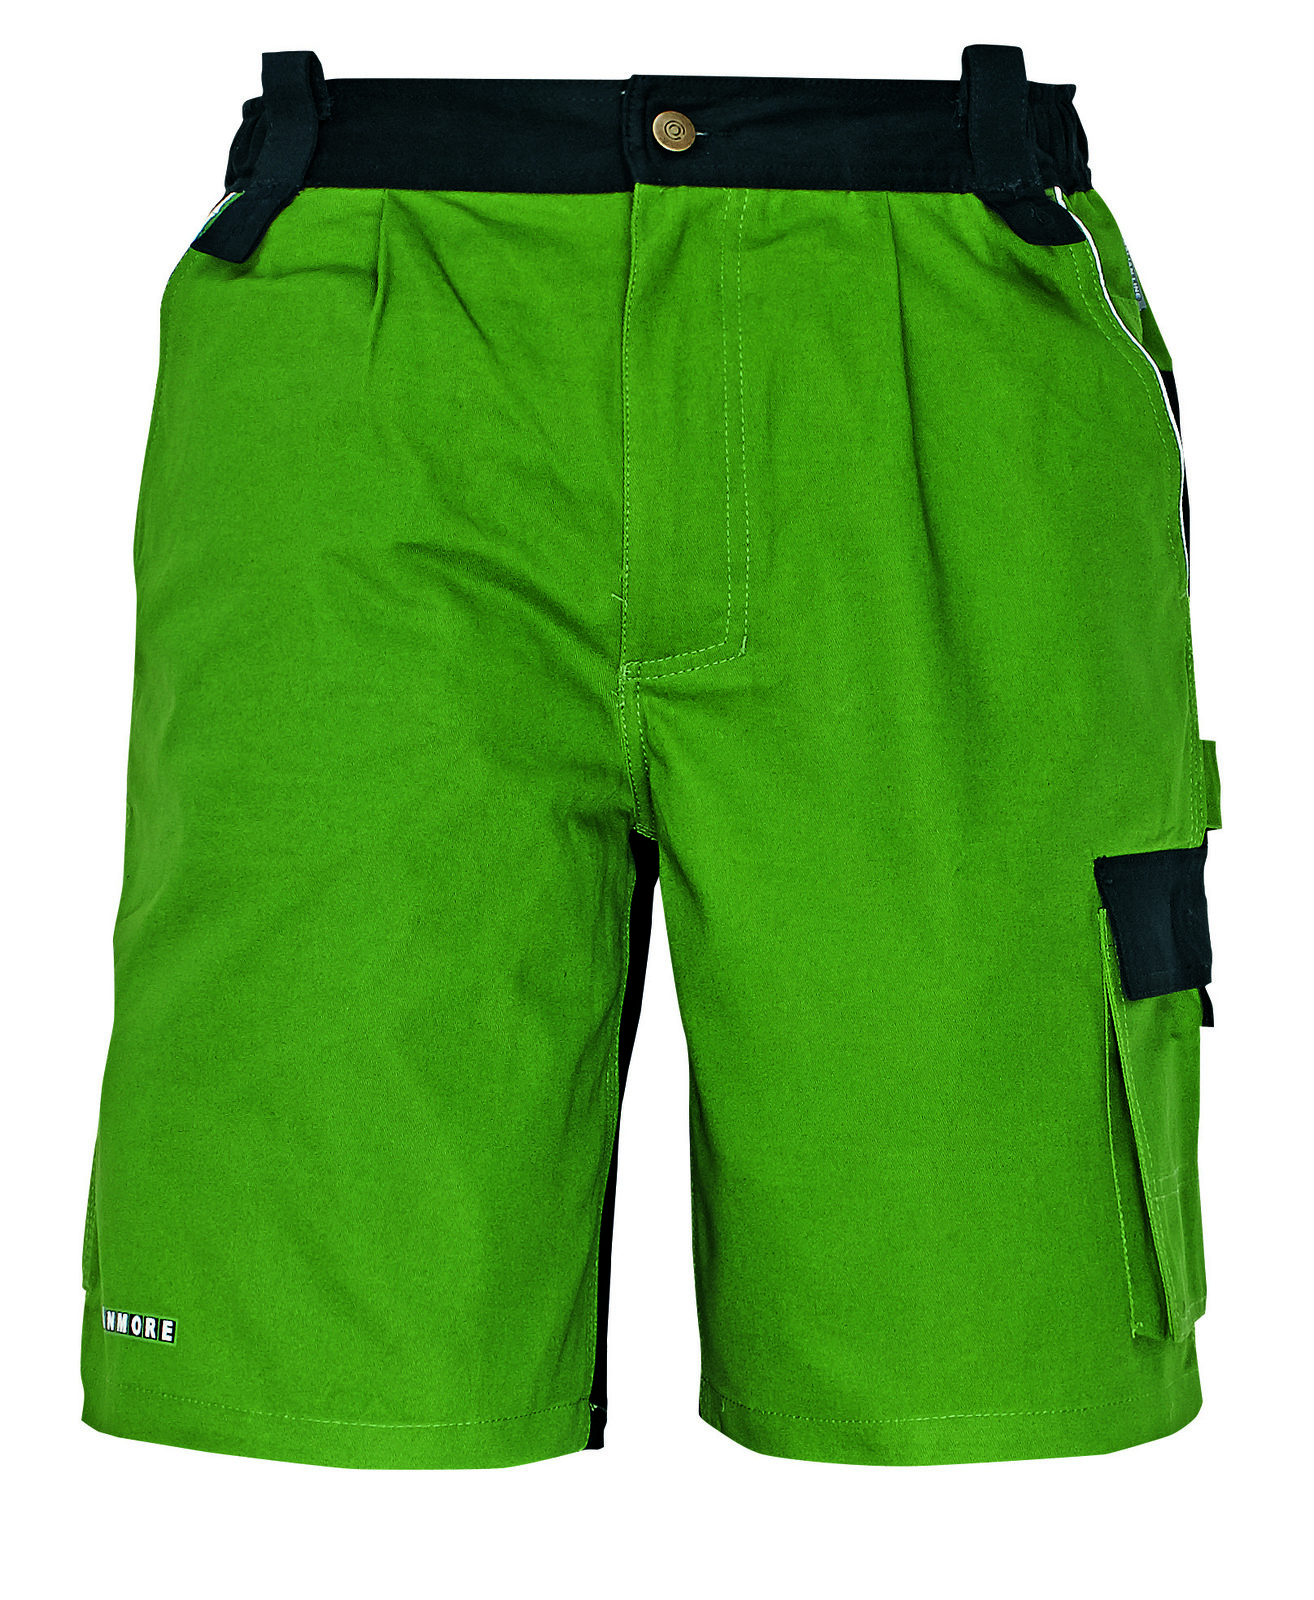 Bavlnené montérkové šortky Stanmore - veľkosť: 52, farba: zelená